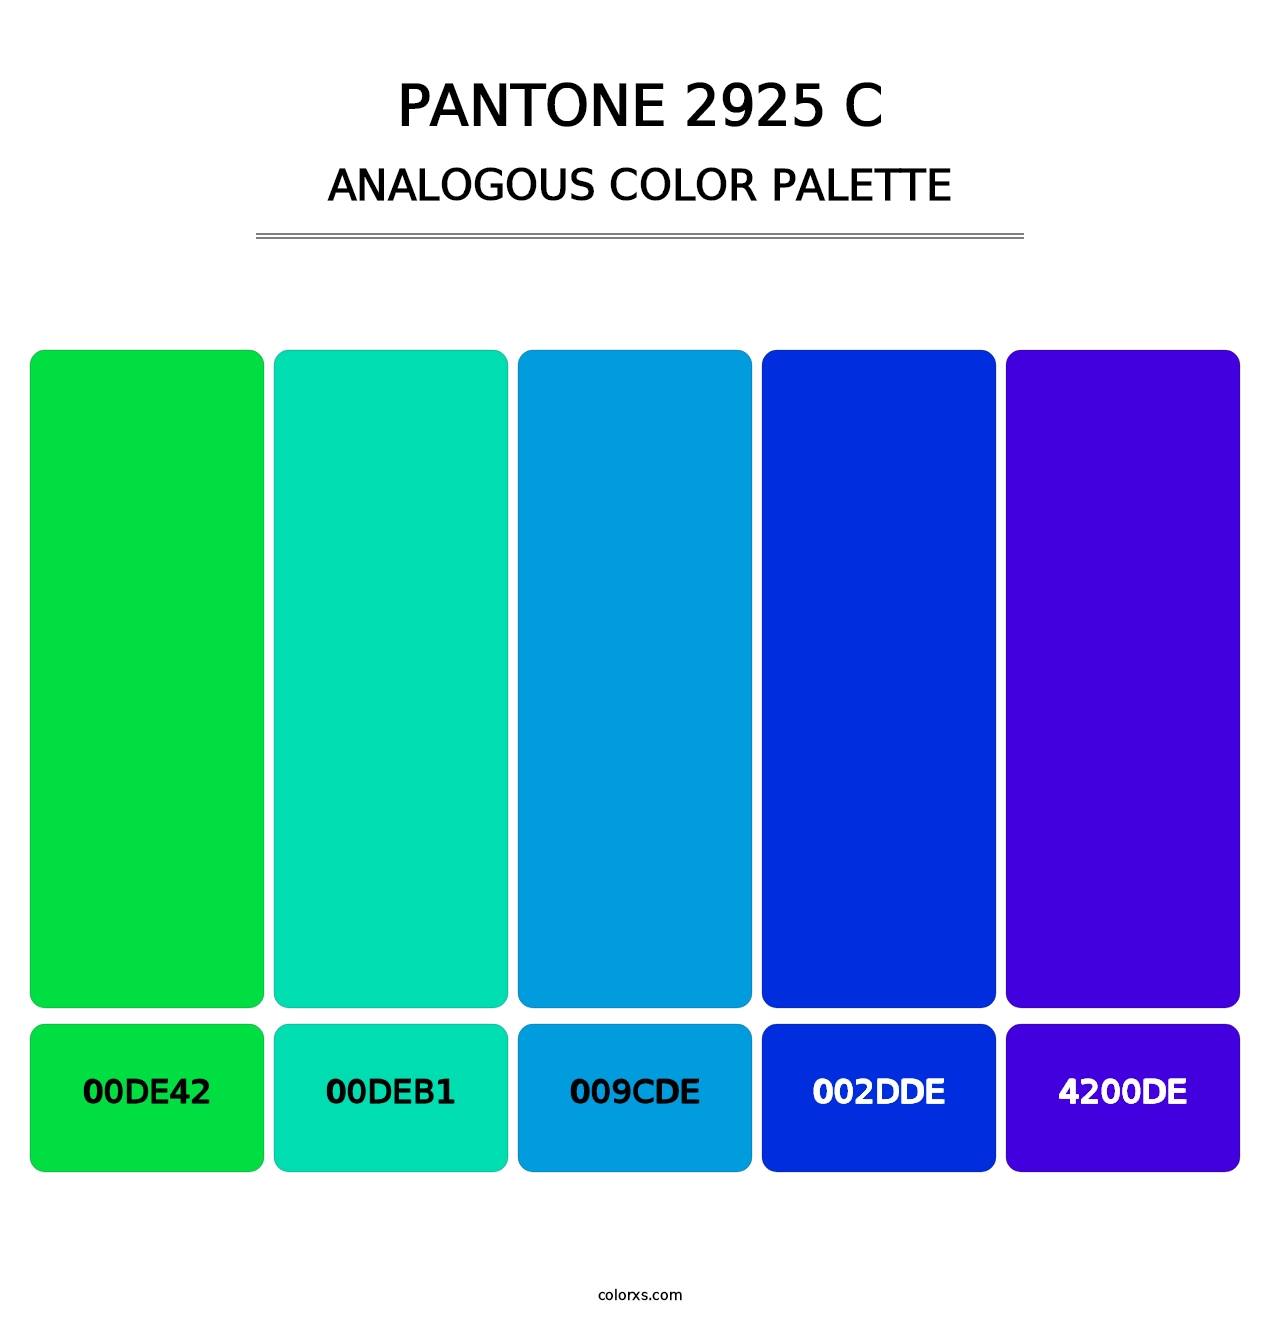 PANTONE 2925 C - Analogous Color Palette